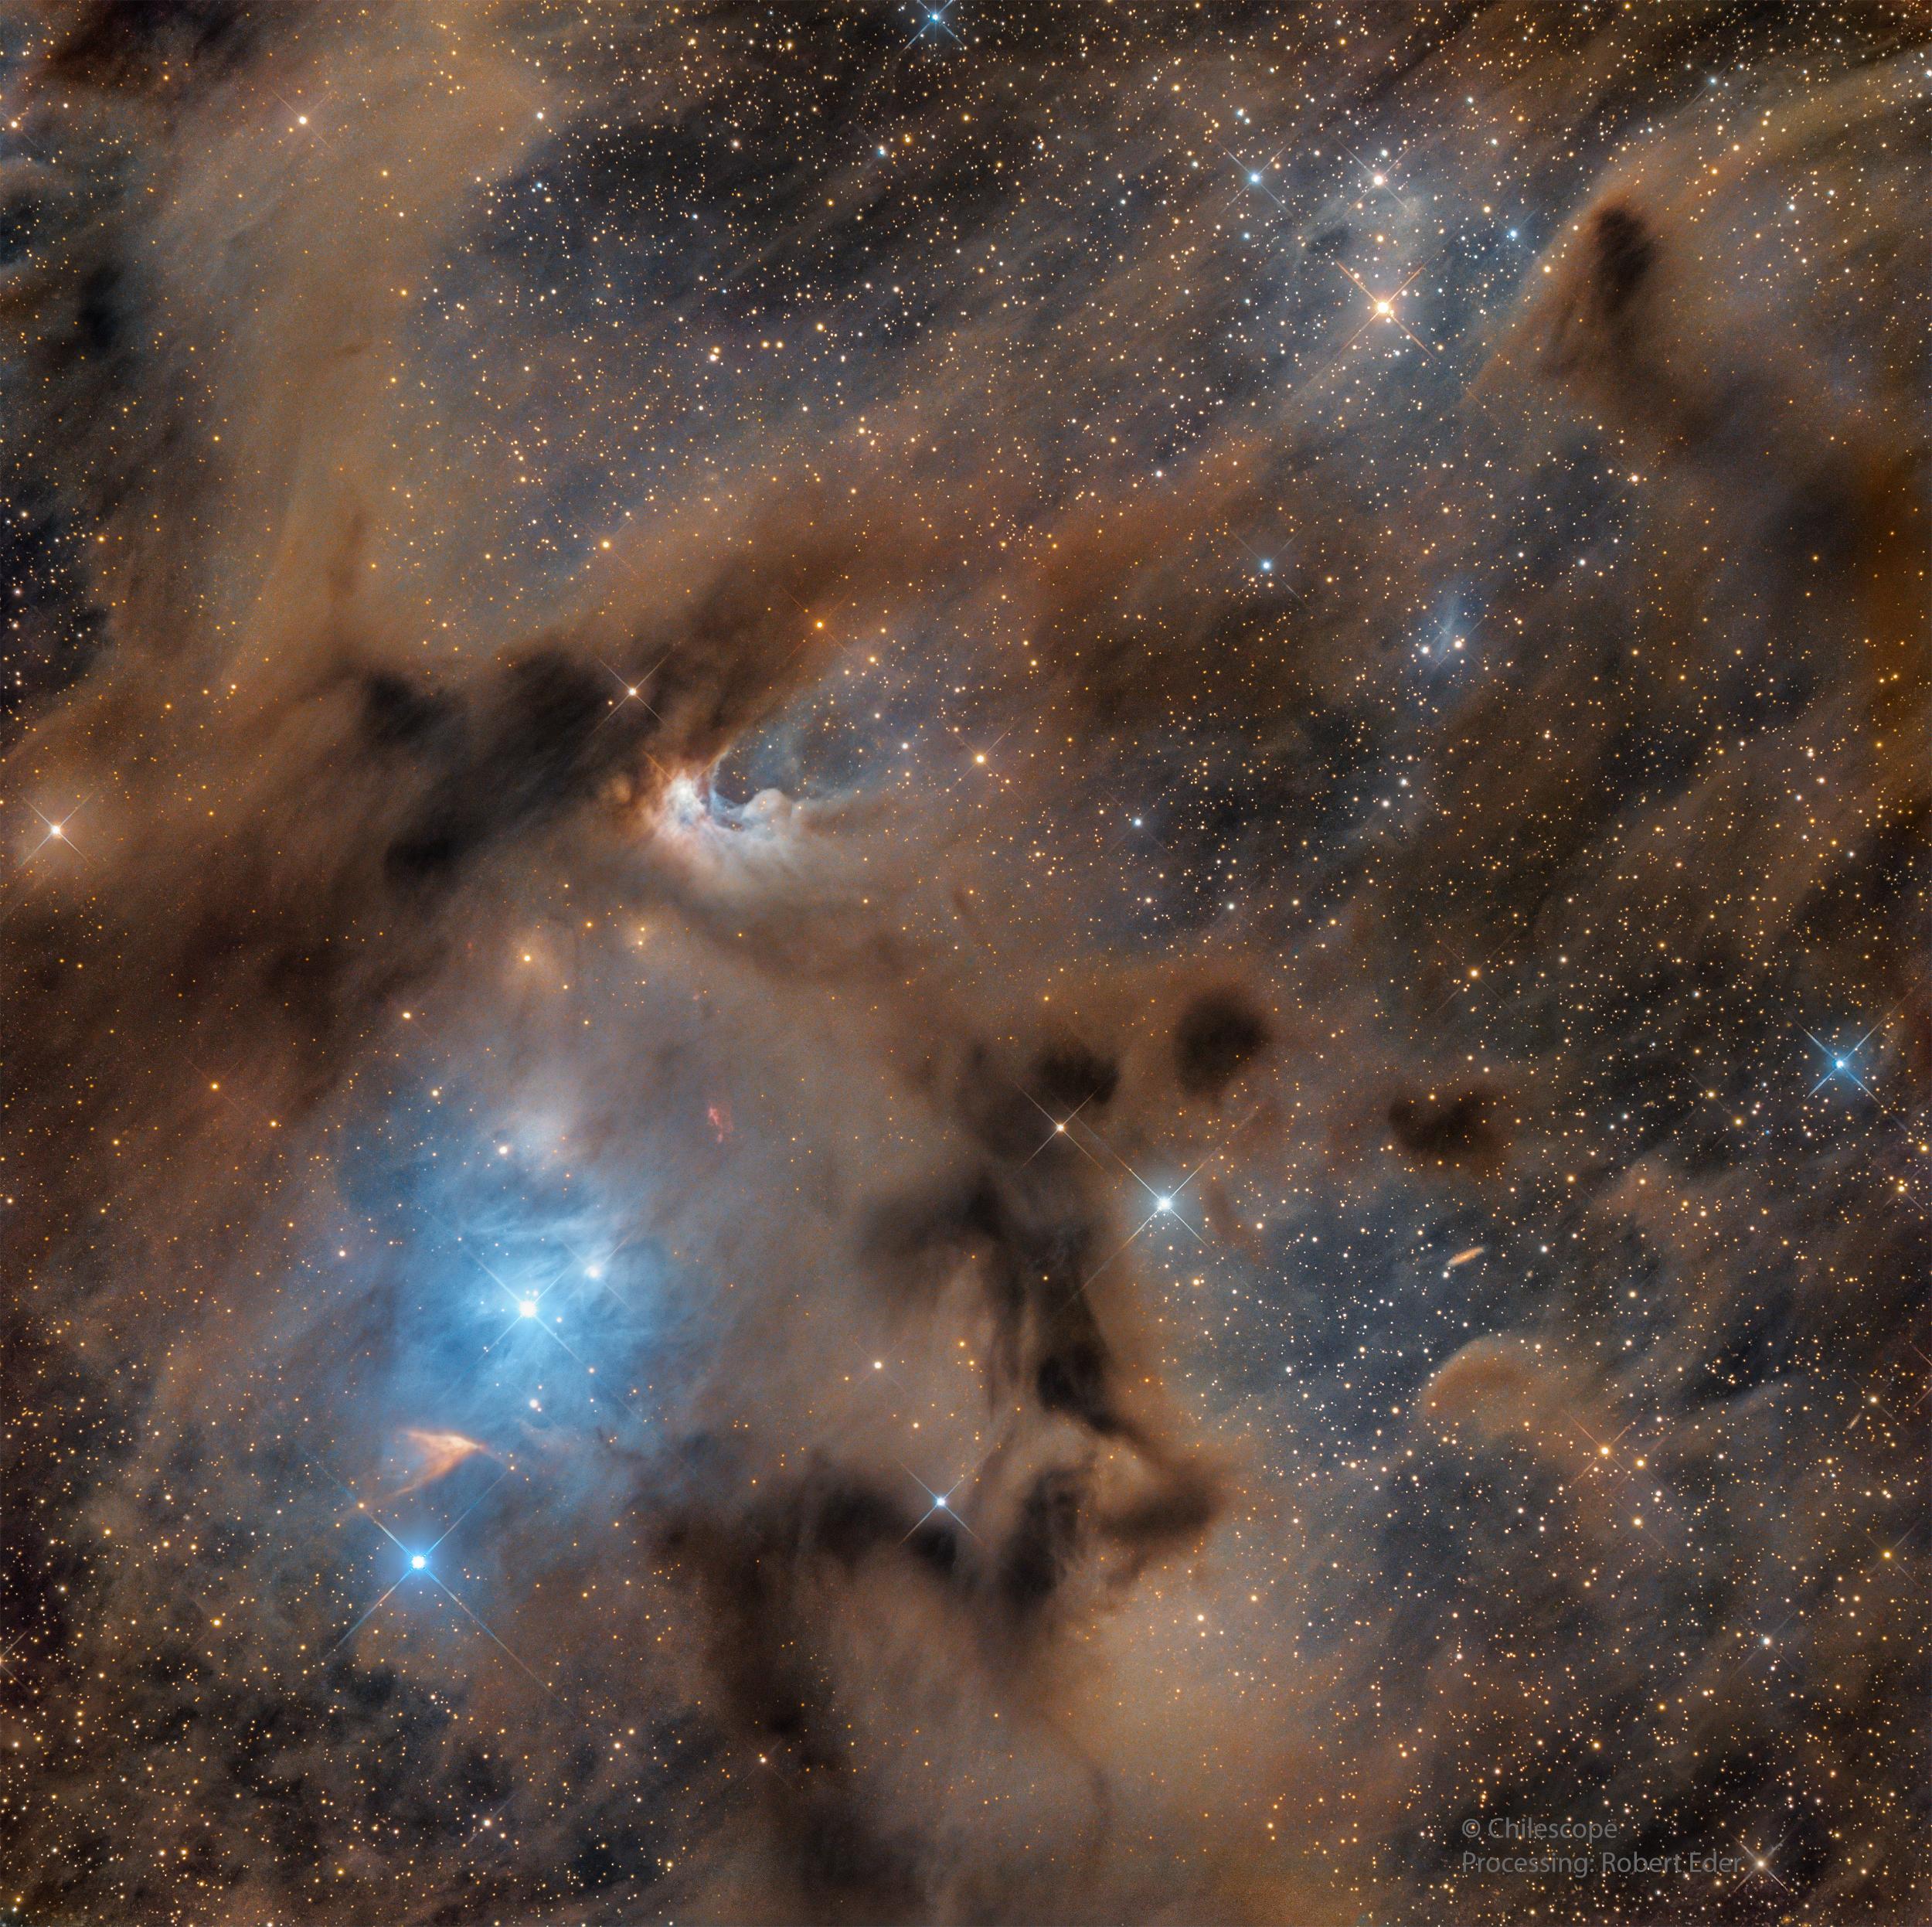 سُدم وأغبرة عاتمة بلون بني مع مناطق بلون أزرق مع وجود نجوم مدببة وتناثر نقاط النجوم المضيئة عبر الصورة